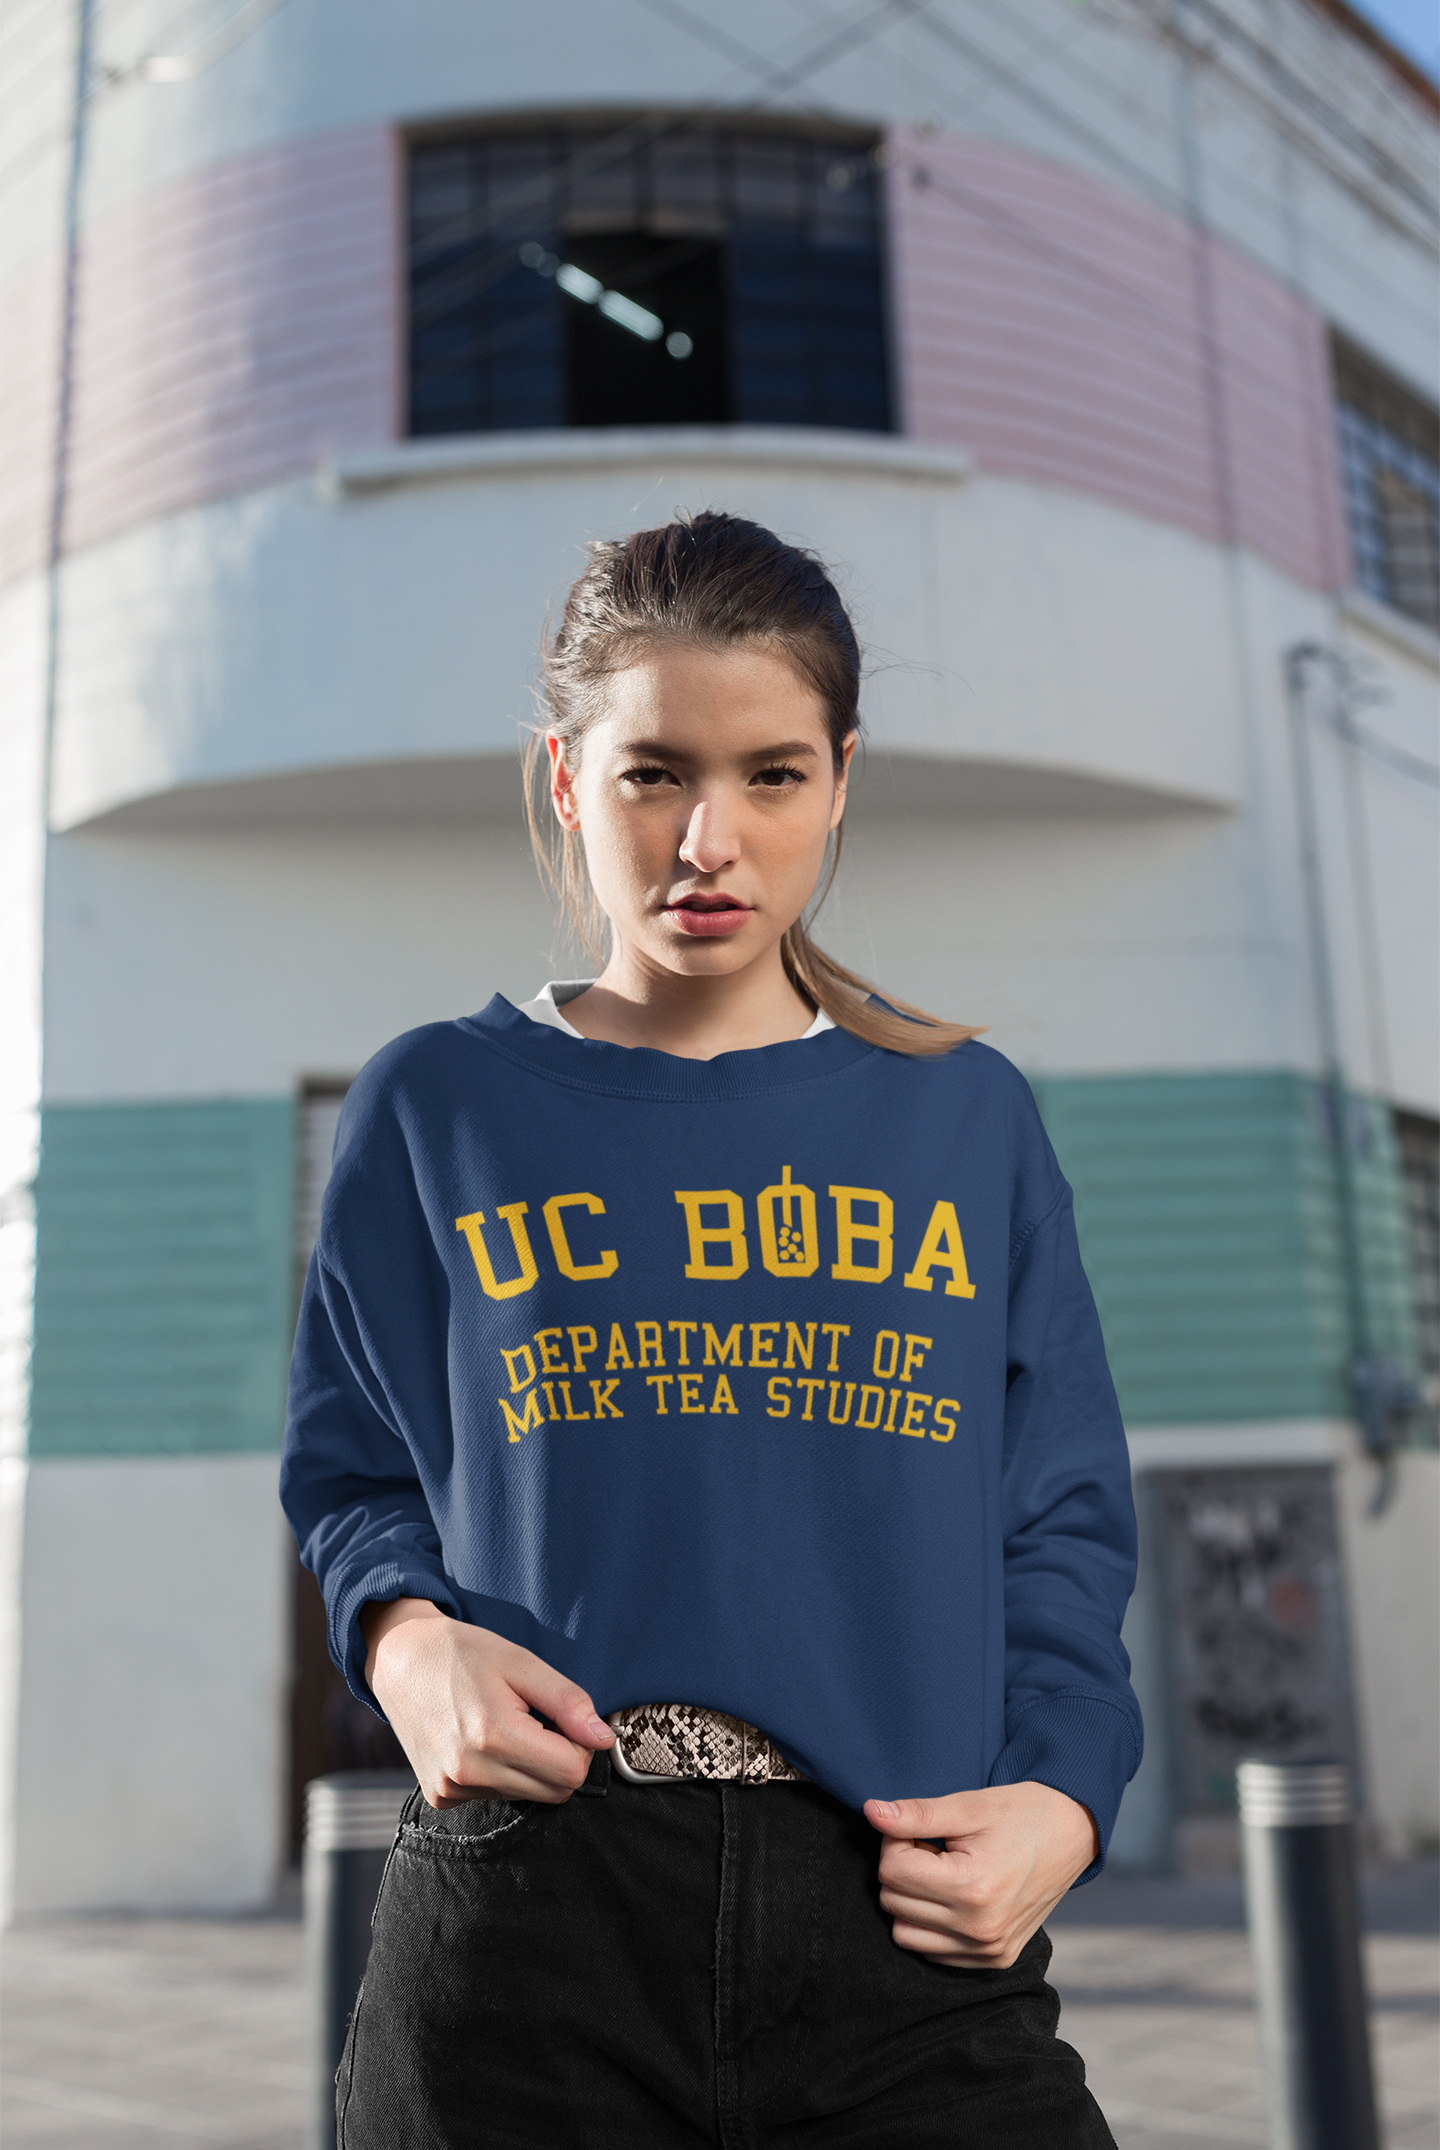 Woman wearing a UC Boba Shirt who likes bubble tea and milk tea